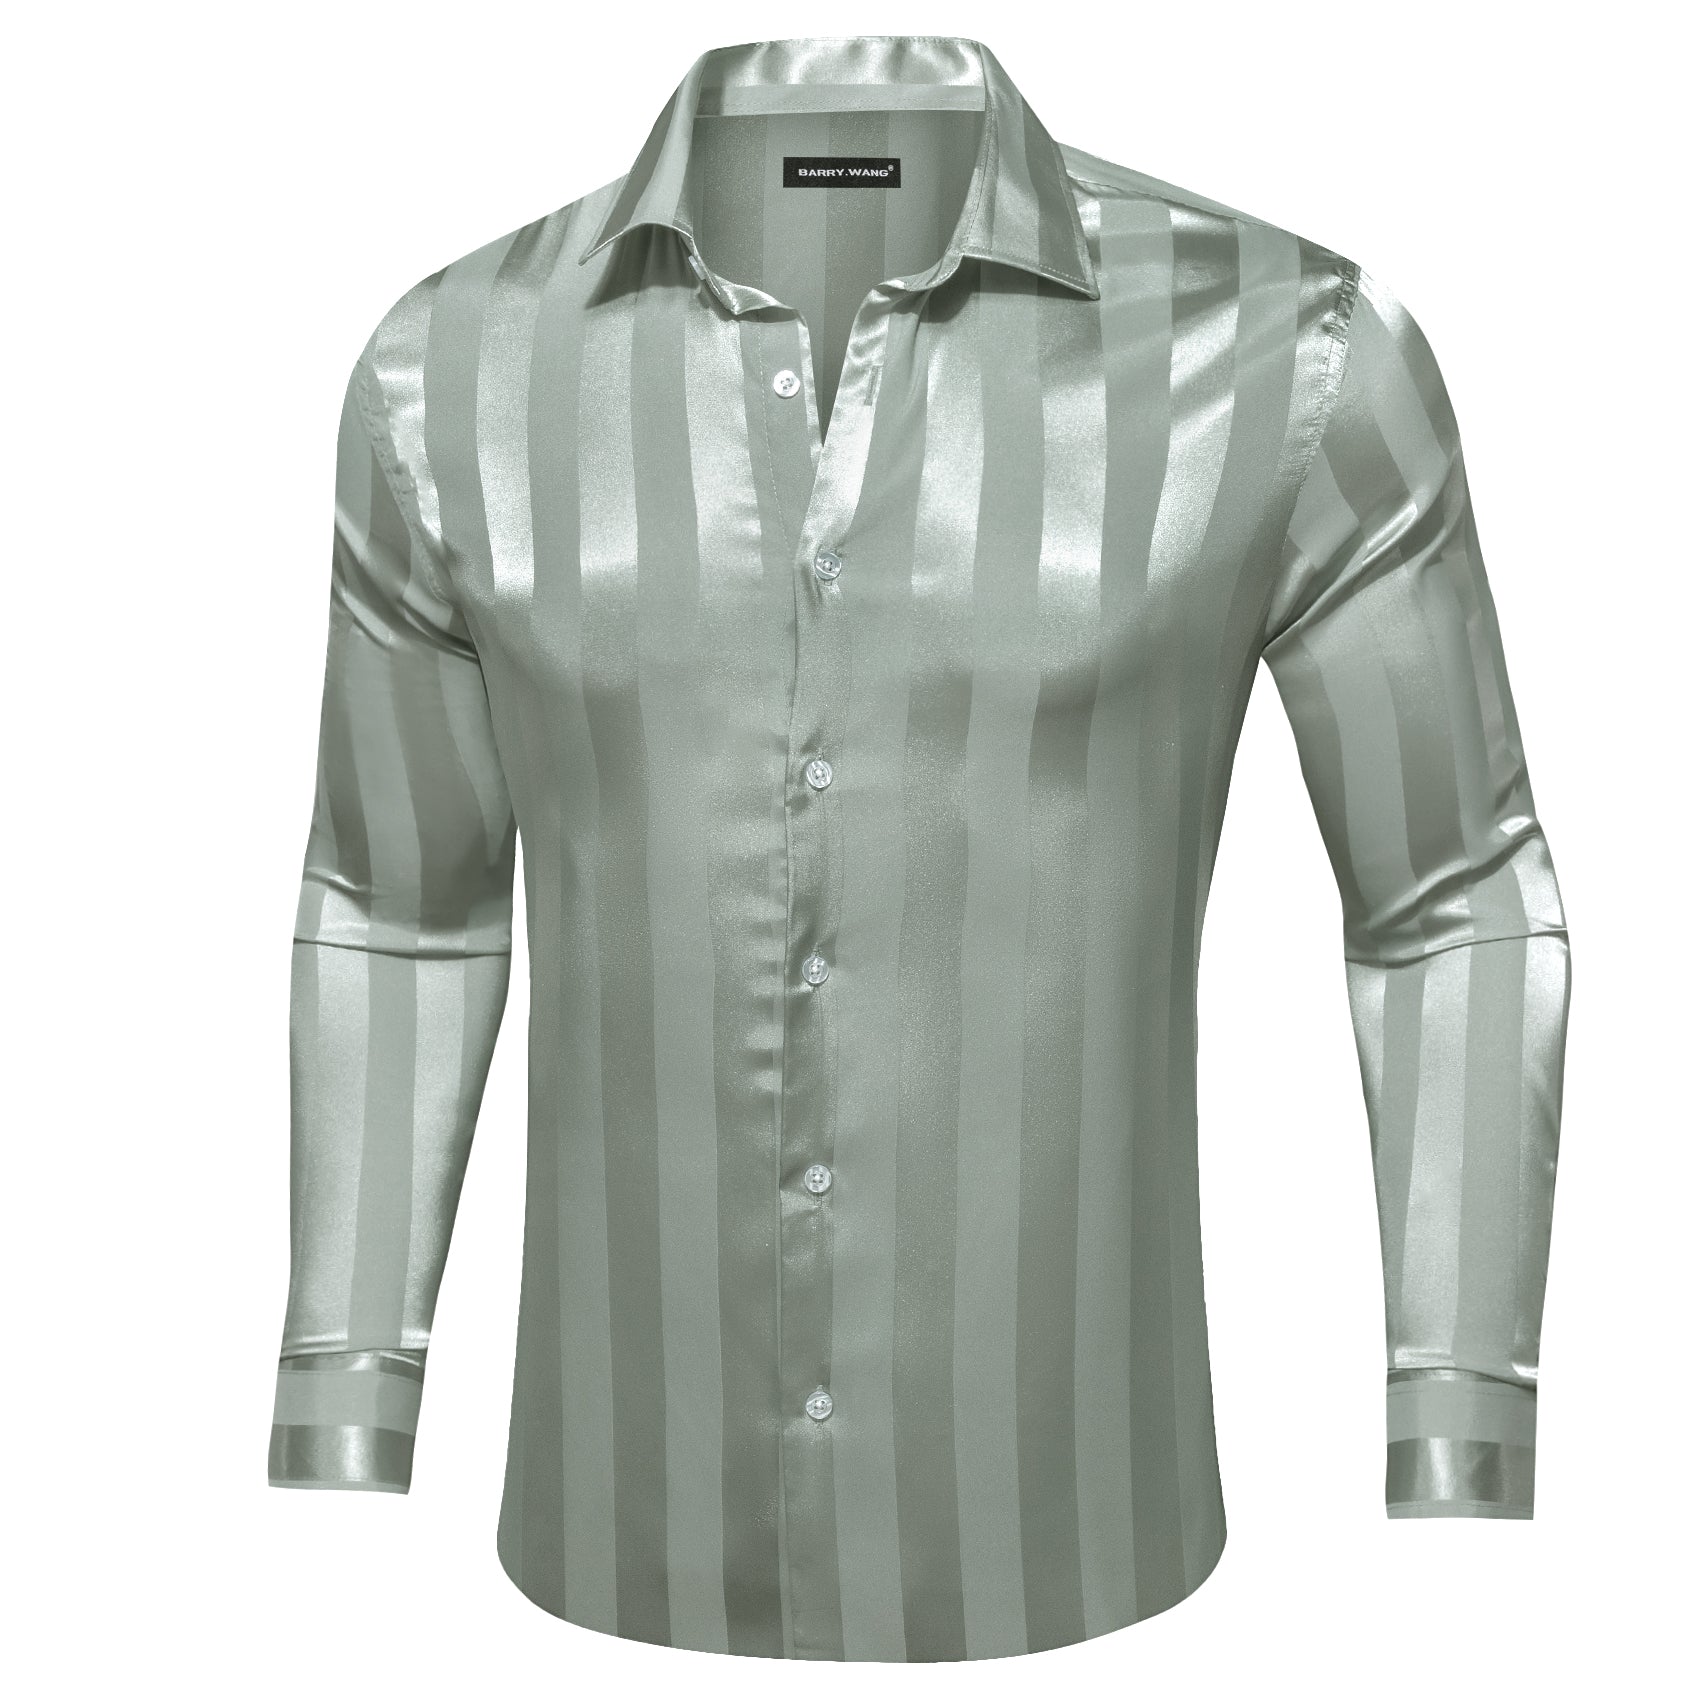 Barry.wang Darkseagreen Striped Silk Men's Shirt